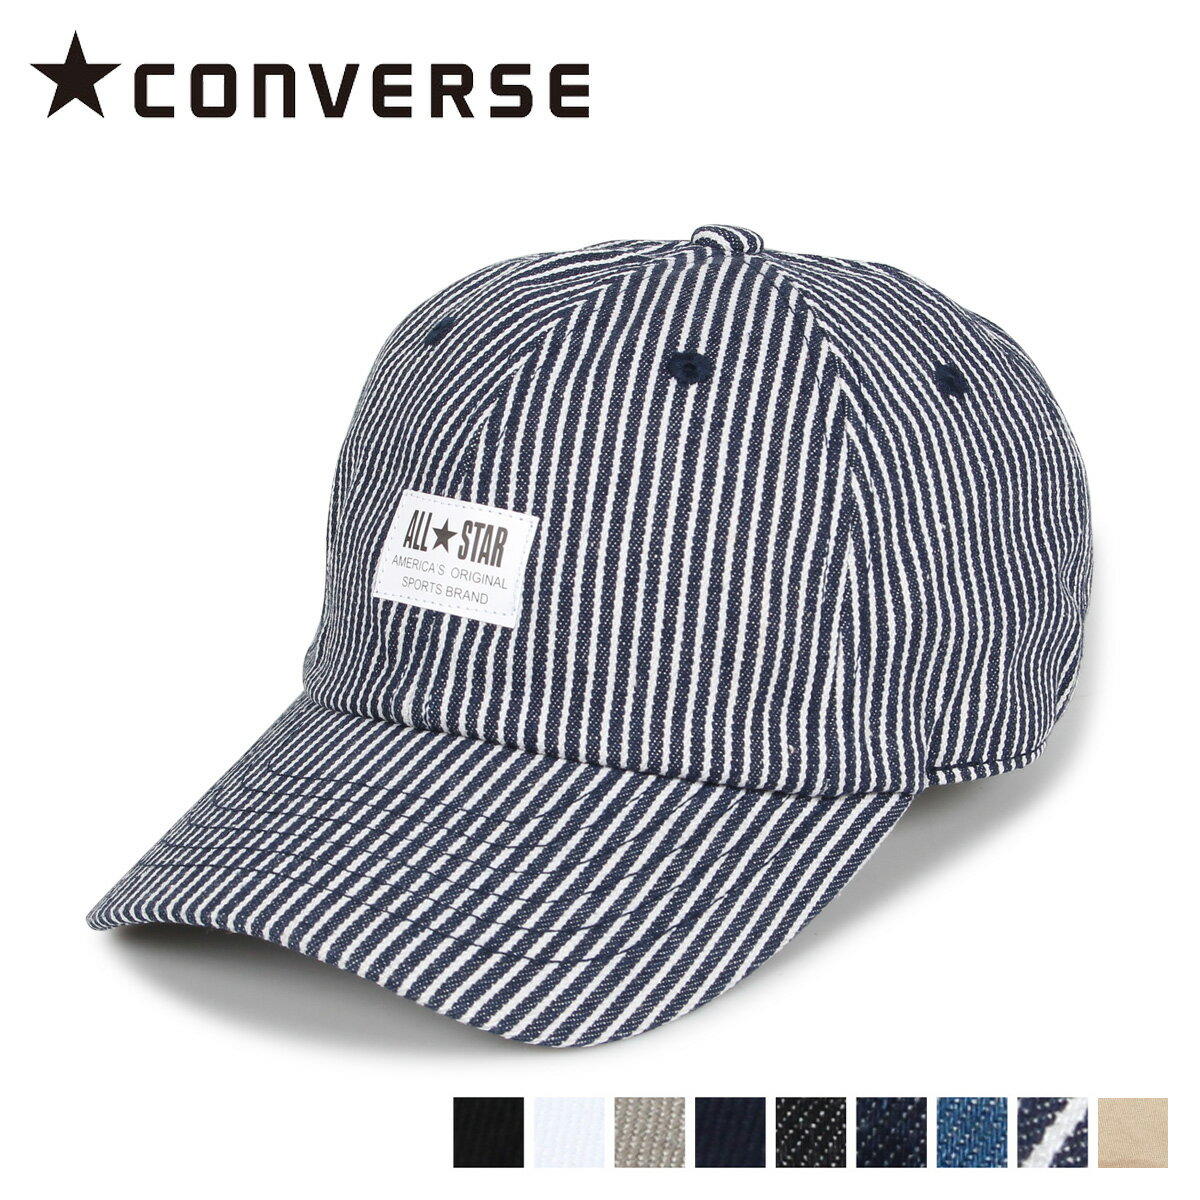 コンバース 帽子 メンズ CONVERSE コンバース キャップ 帽子 ローキャップ メンズ レディース CN WH LABEL LOW CAP ブラック ホワイト グレー ネイビー ダークネイビー ヒッコリー 黒 白 187-112702